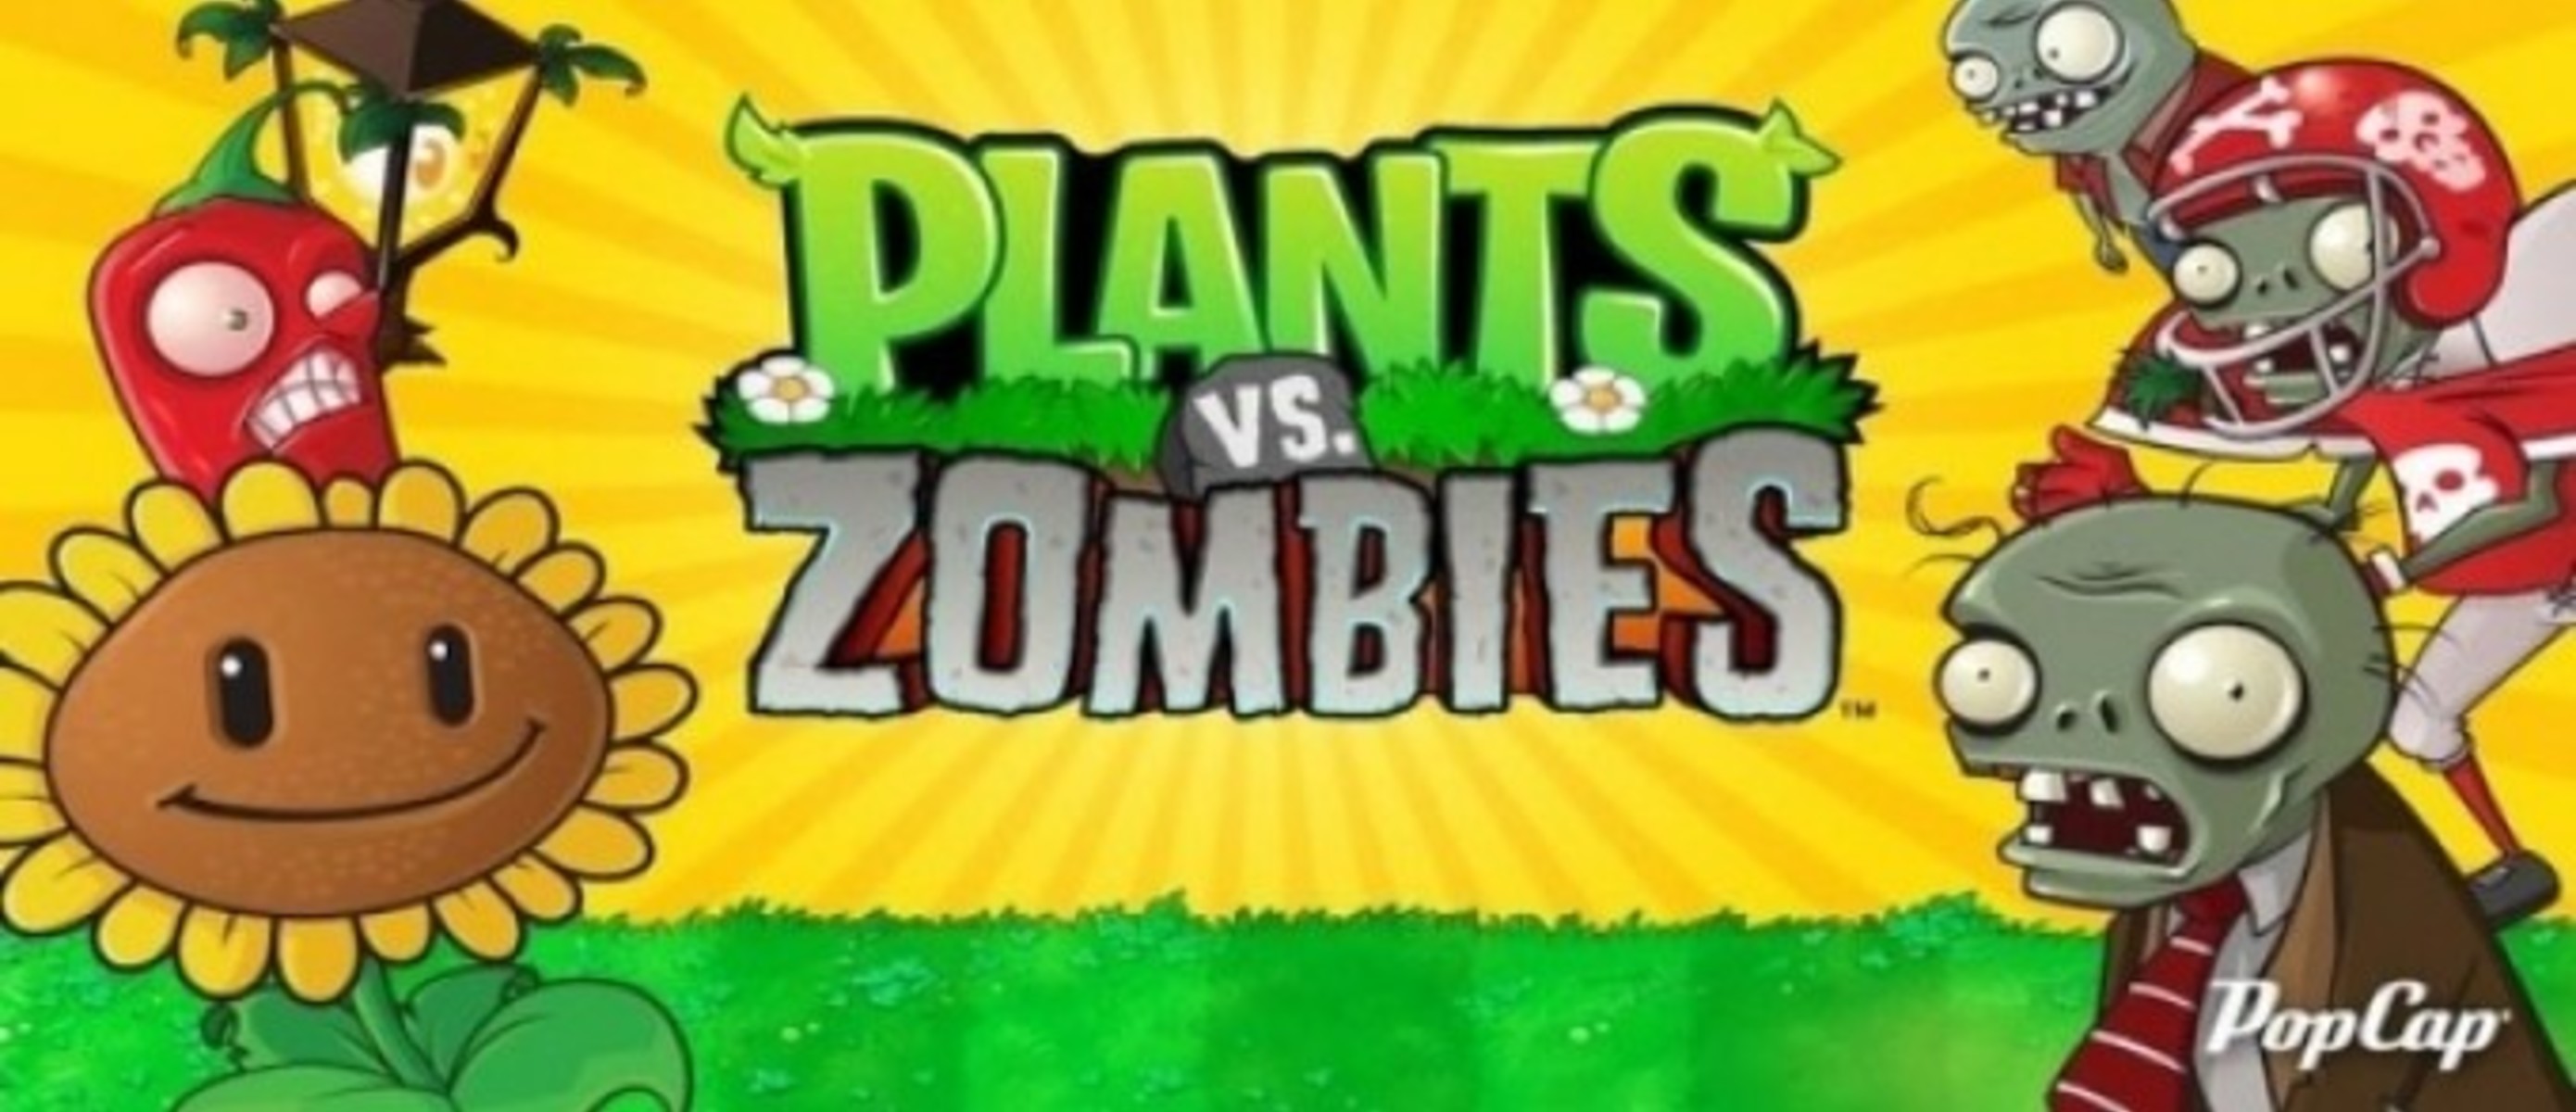 Плентс версус зомби. Плантс против зомби. Растения против зомби игра. Растения против зомби обложка. Plants vs Zombies растения.